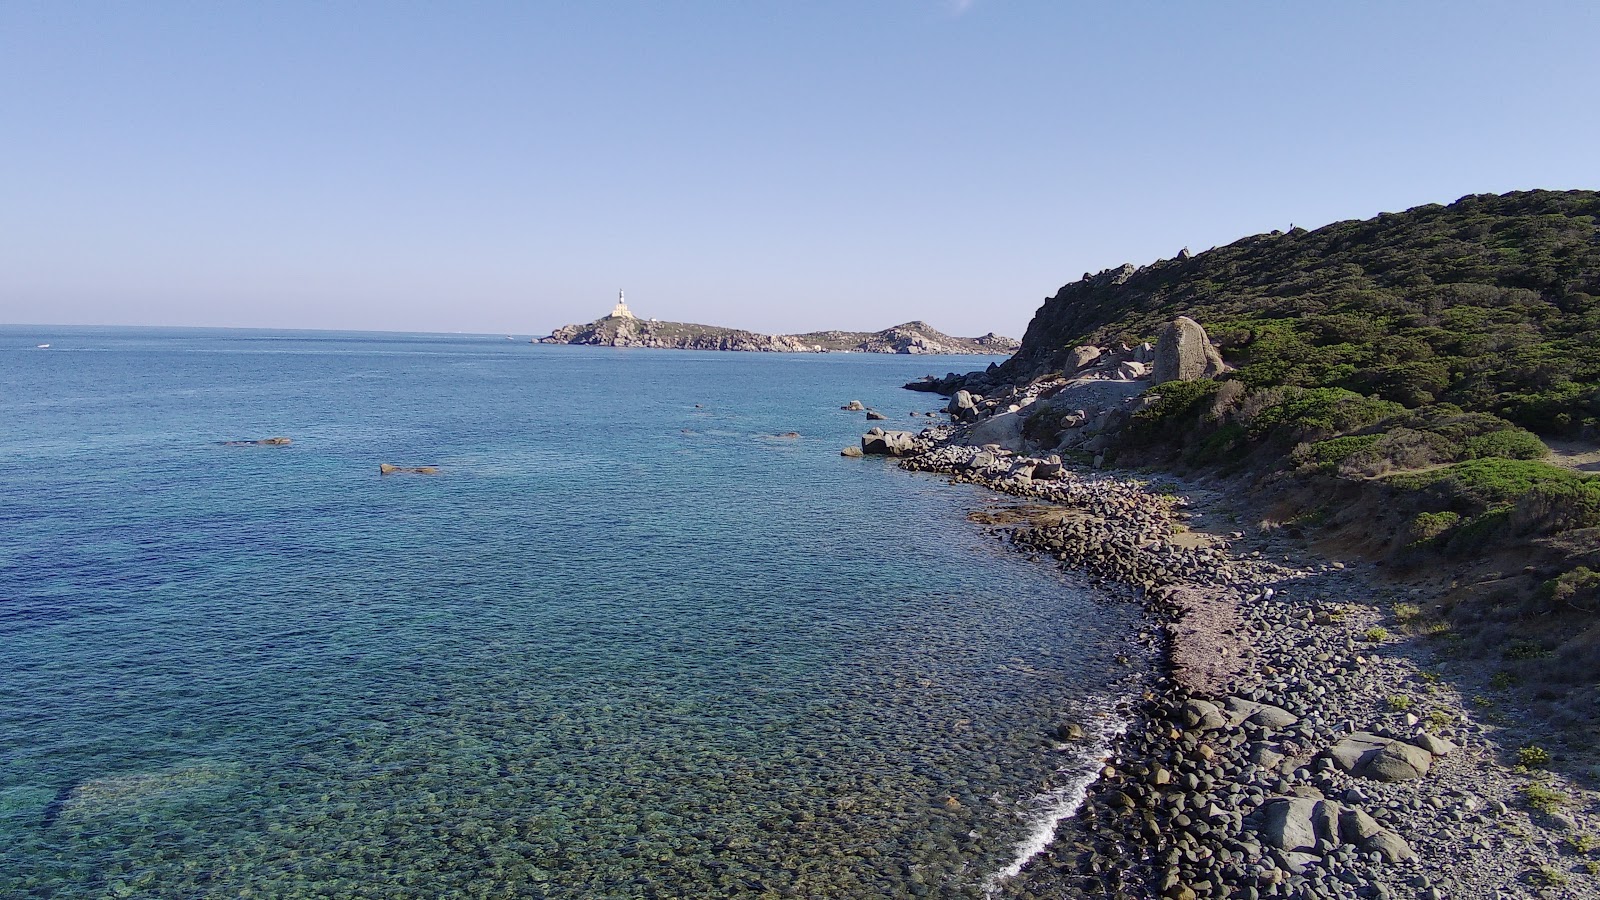 Valokuva Spiaggia Cala Burroniista. sijaitsee luonnonalueella